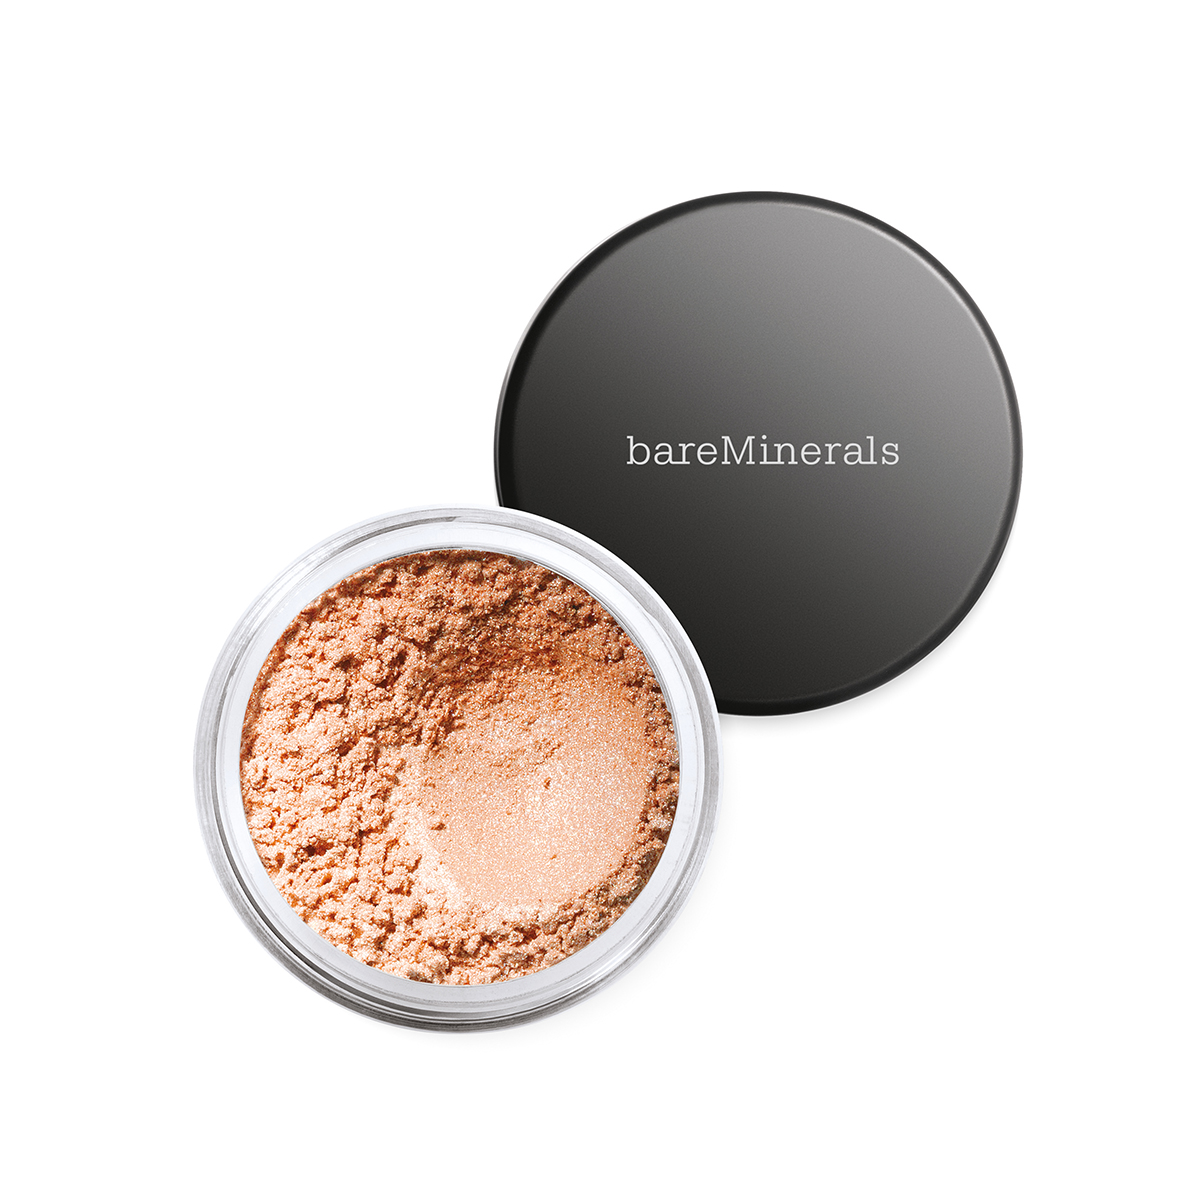 Bareminerals Eyeshadow/Glimmer Vanilla Sugar